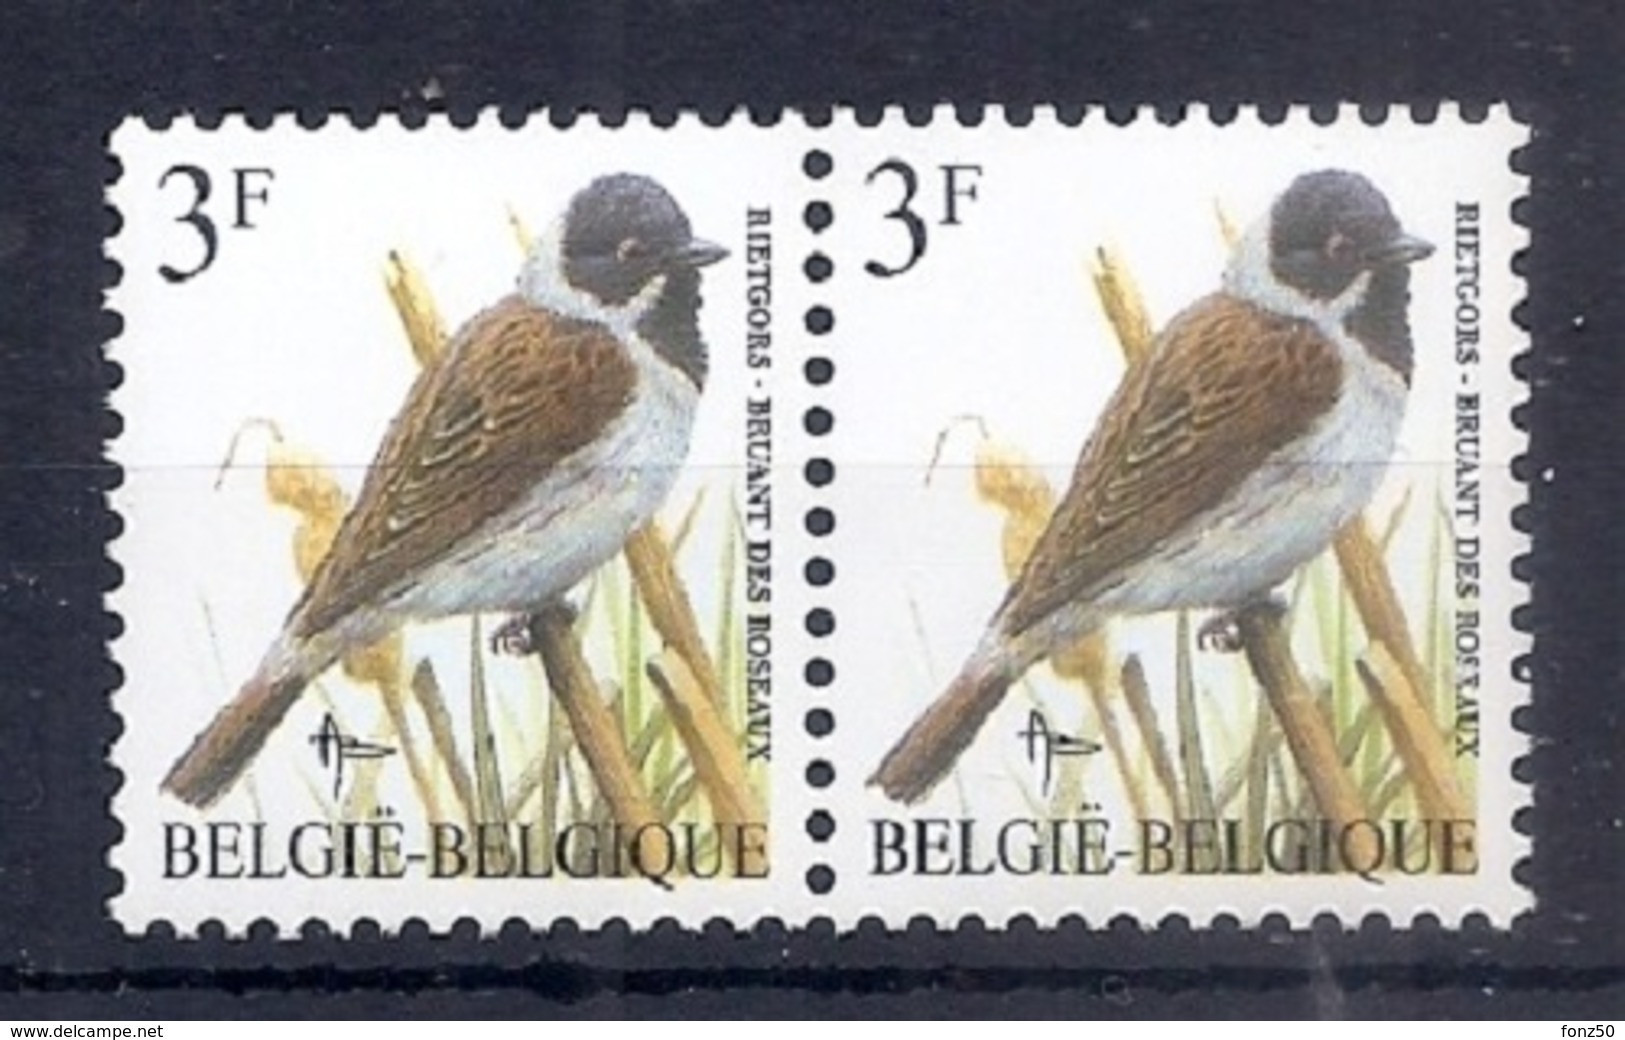 BELGIE * Buzin * Nr 2425 * Postfris Xx * TYPO PAPIER - WITTE GOM - 1985-.. Birds (Buzin)